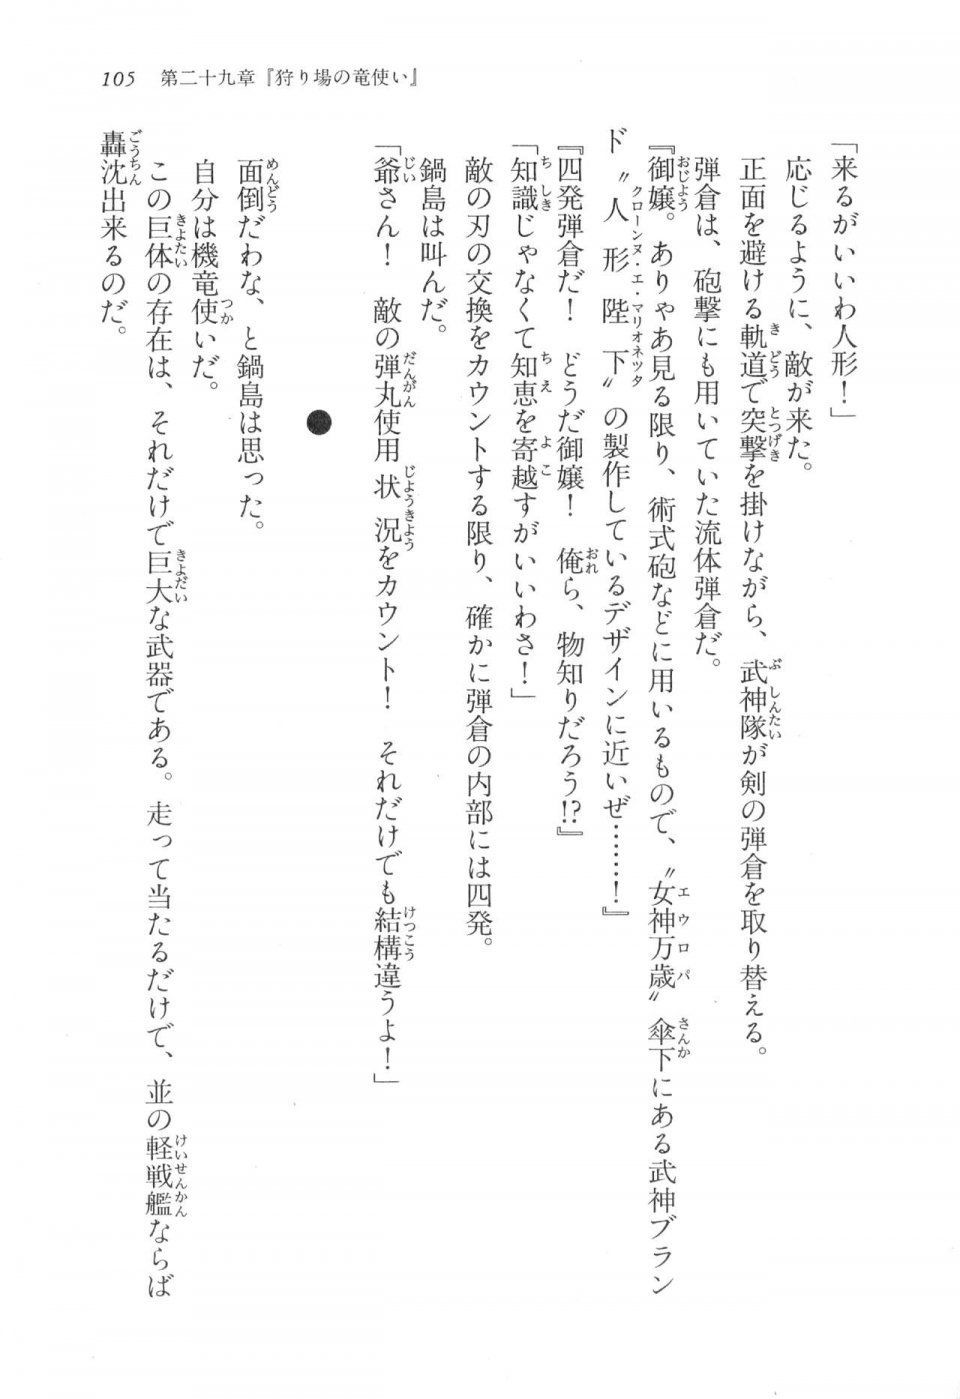 Kyoukai Senjou no Horizon LN Vol 17(7B) - Photo #105